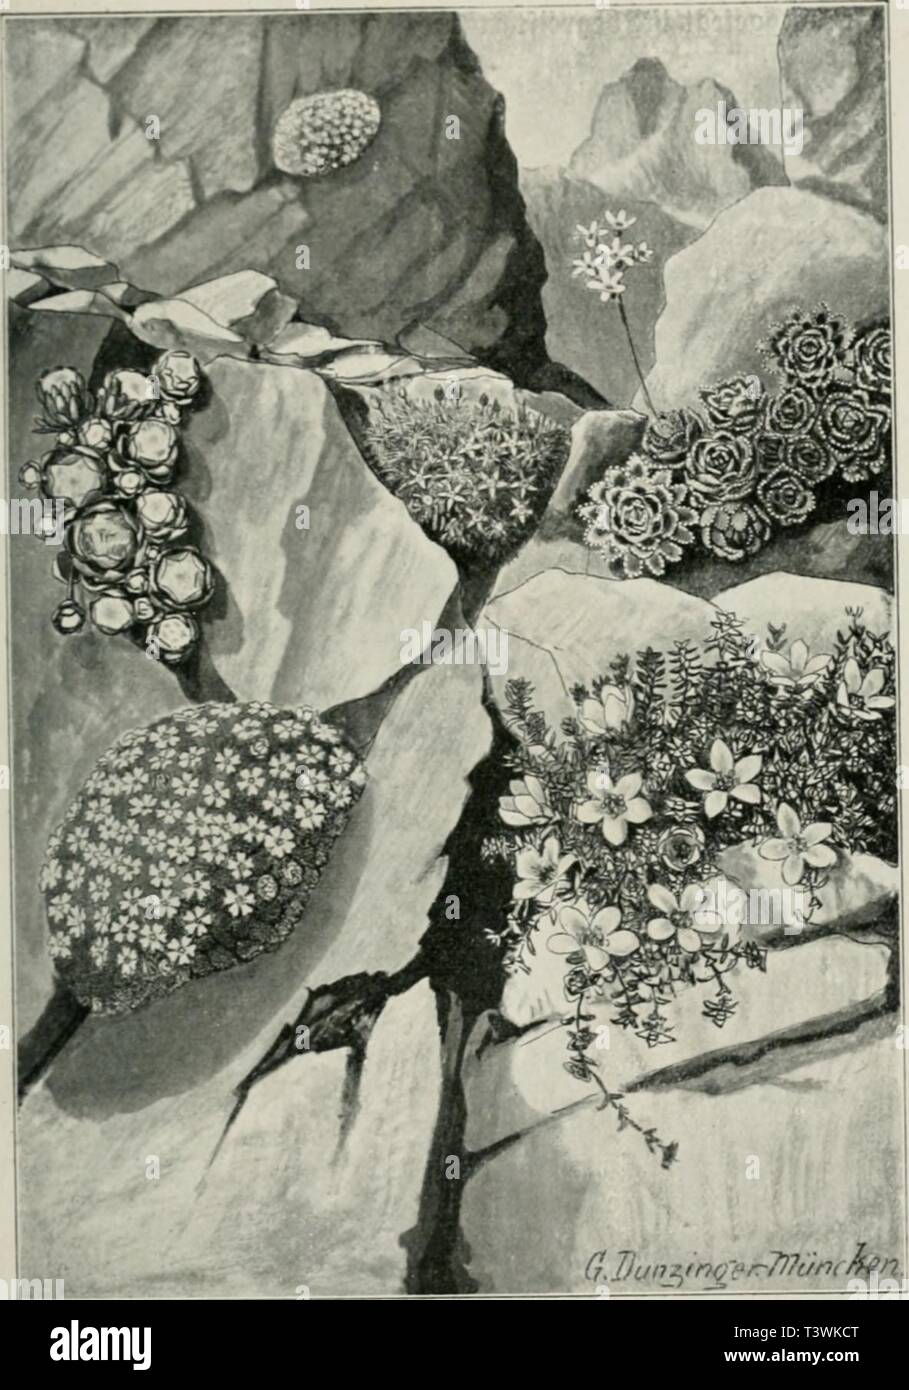 Archive image from page 70 of Die Natur in den Alpen. Die Natur in den Alpen  dienaturindenalp00franuoft Year: 1910  opposilifoli.i. Pol|terpflci'3c«- Cinfs unten Cherleria 'Aisine} sedoides, barüber Sempervivum arachnoideum, im mittel« gtunb Androsace helvetica, battben Saxifraga Aizoon, barunter S. (rtad) bcr :tatut gpscicbnet oon Dr. &lt;S. D un jinger.) Srance, Die Datur in ben Rlpen. Stock Photo